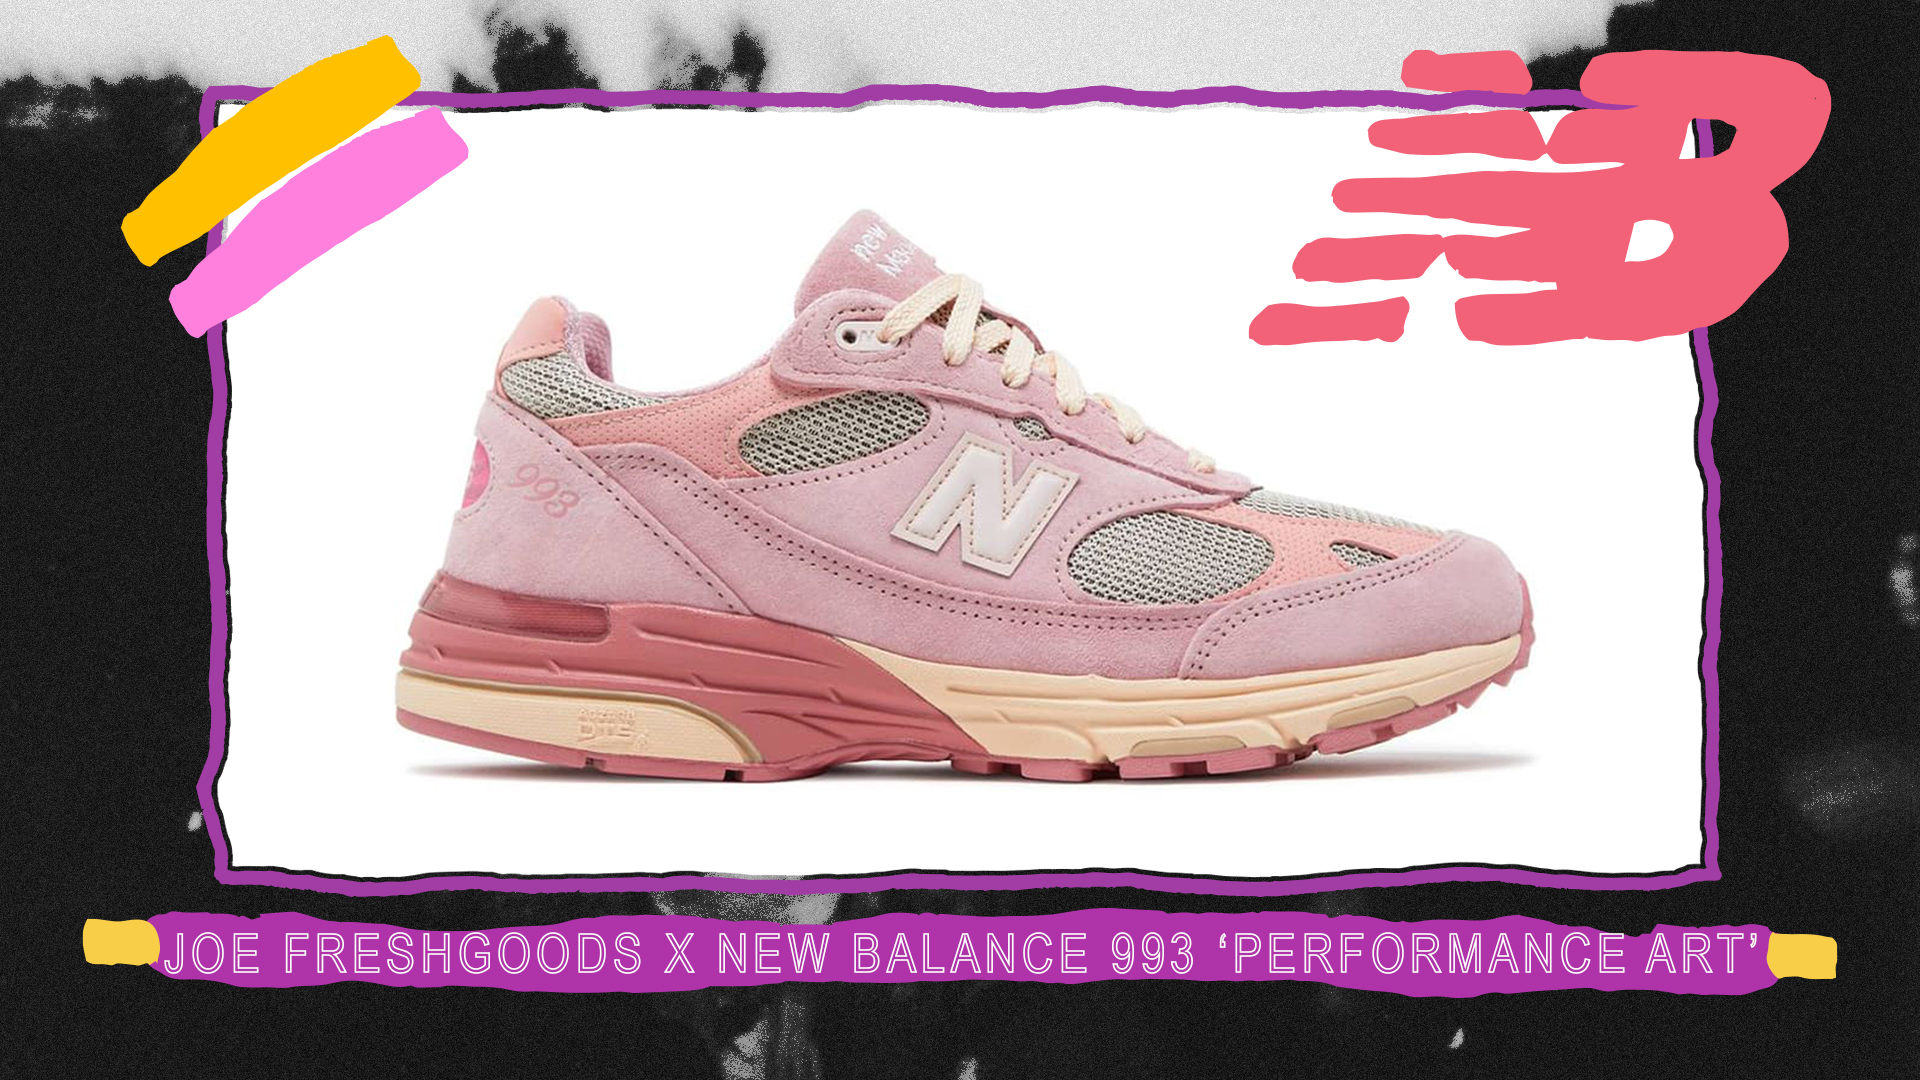 Joe Freshgoods New Balance 993 Pink